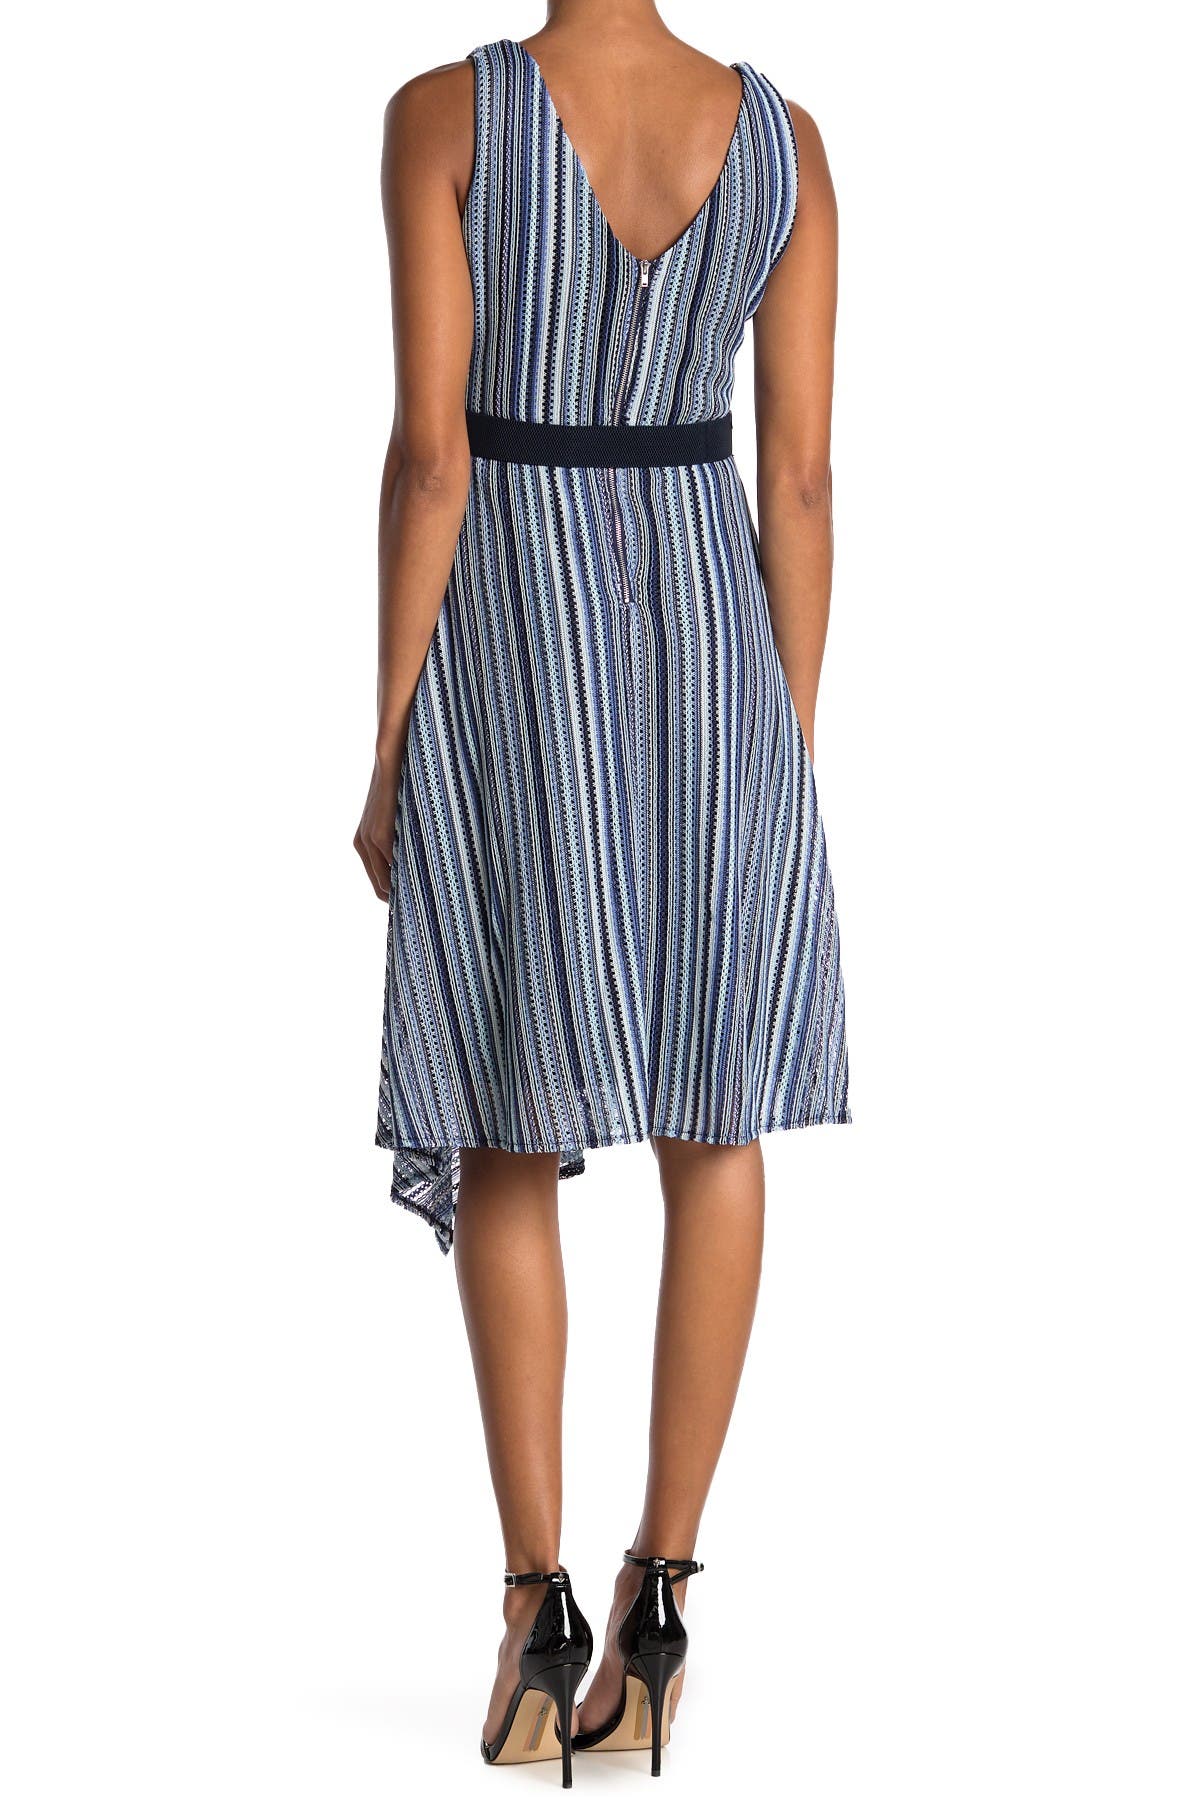 Gabby Skye | Striped Sleeveless Belted Midi Dress | Nordstrom Rack